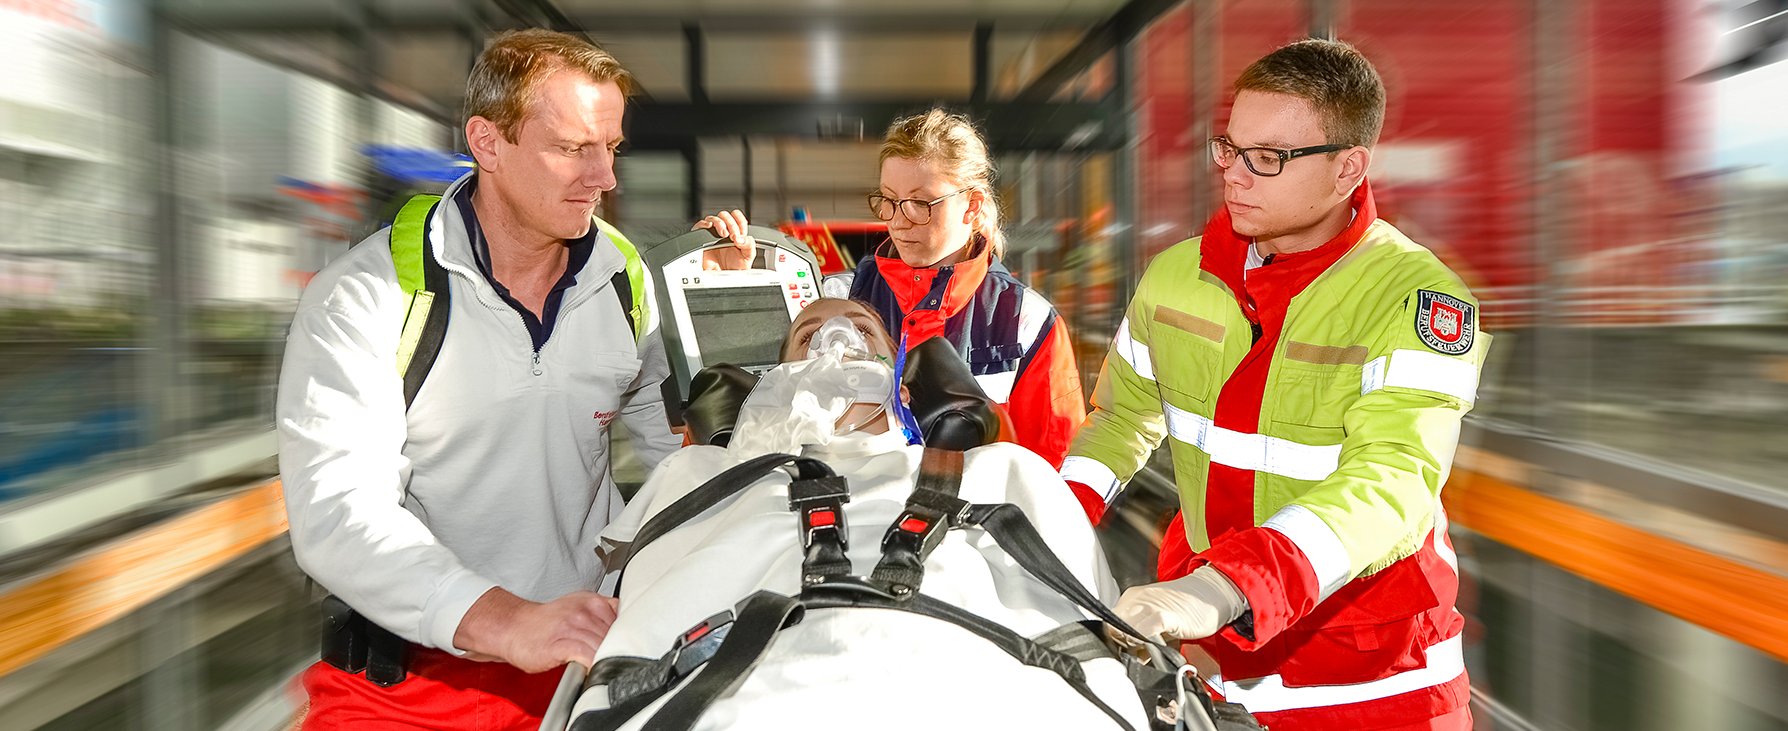 Das Team des Notarzteinsatzfahrzeugs transportiert einen Patienten auf einer Trage in die Zentrale Notaufnahme der MHH.